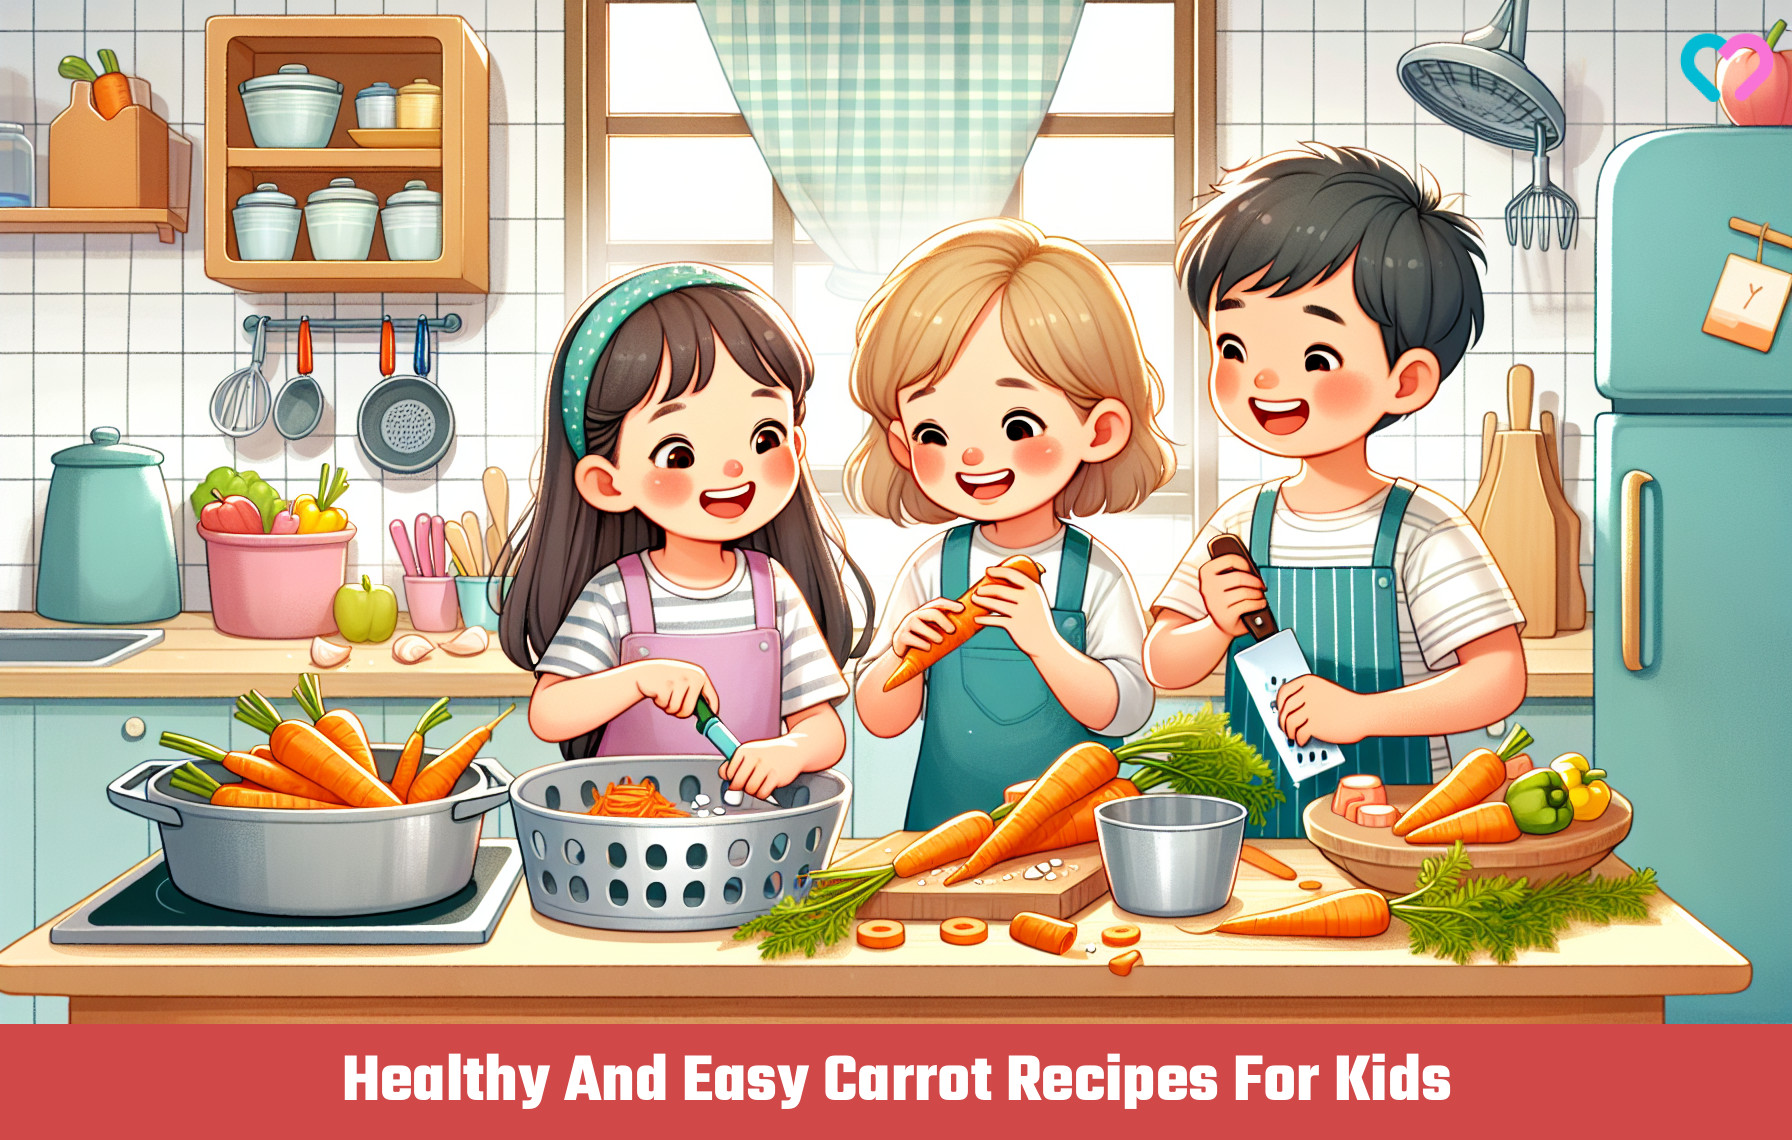 Carrot Recipes For Kids_illustration